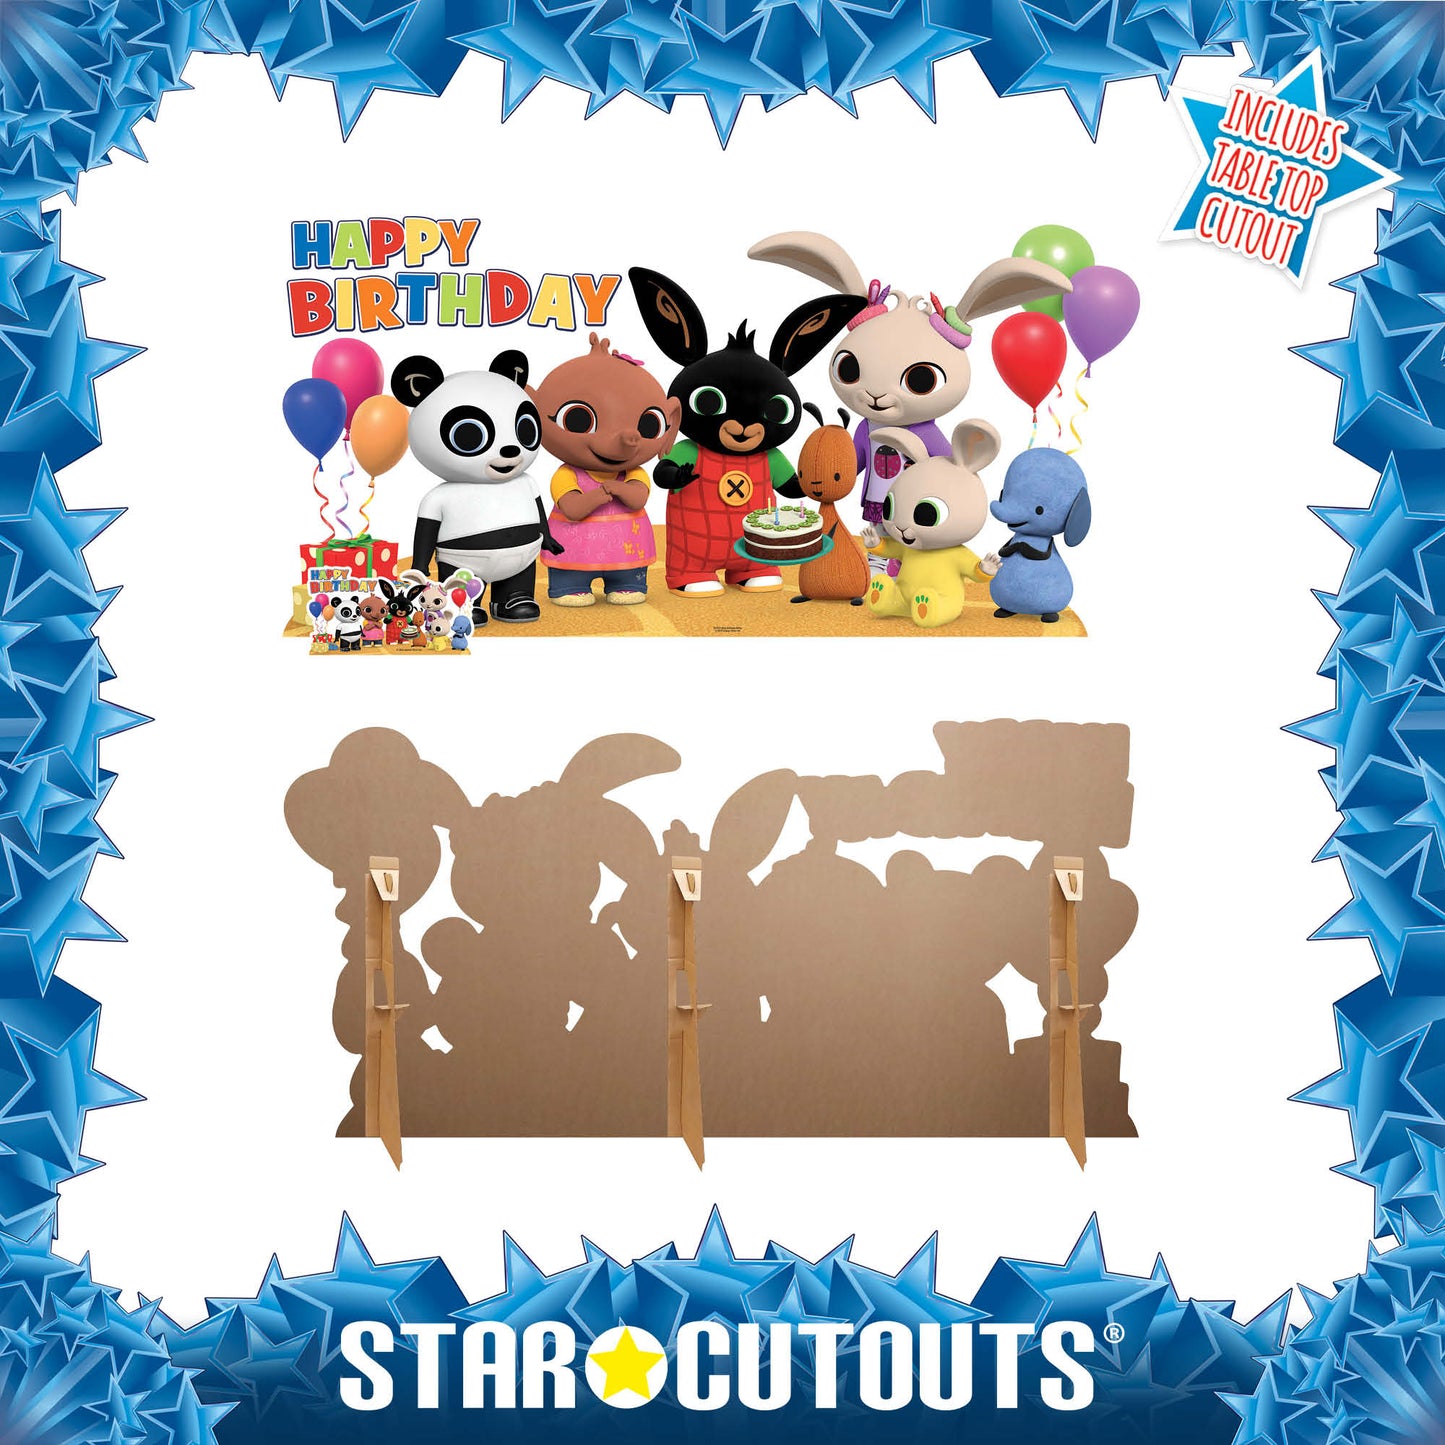 Bing Birthday Party Cardboard Cutout